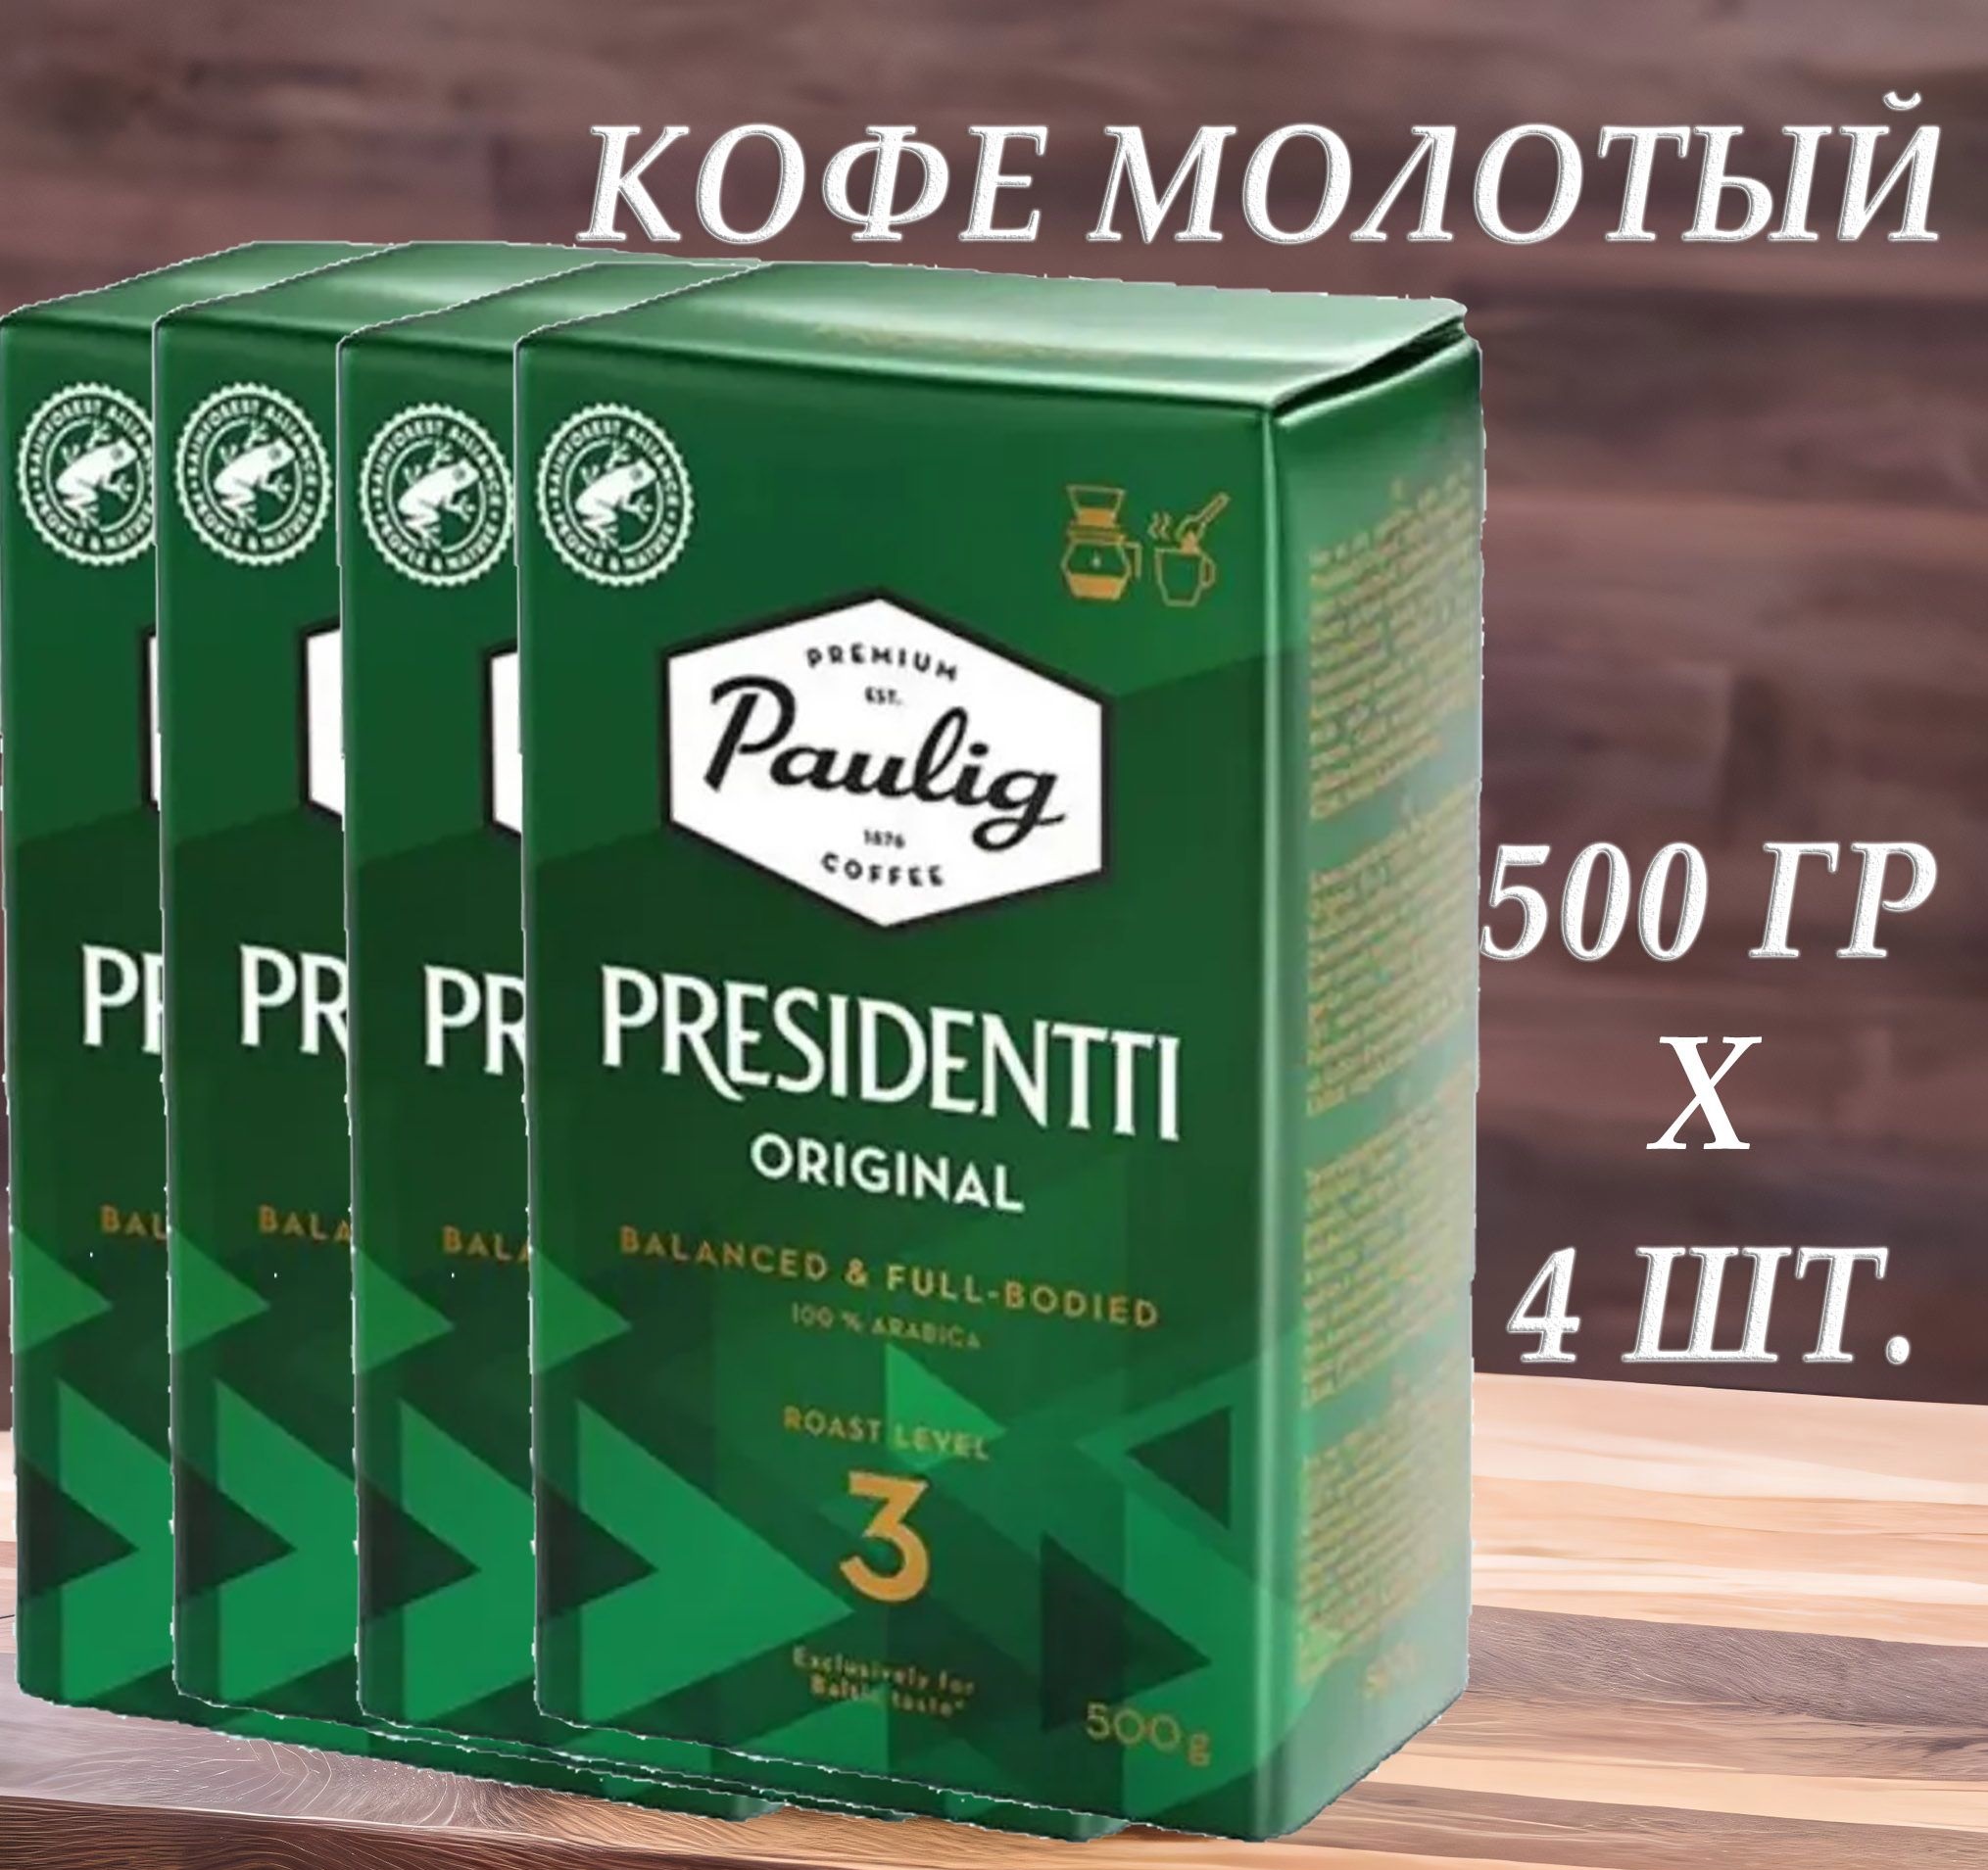 Кофе молотый Paulig Presidentti Original 3, 500 г х 4 шт